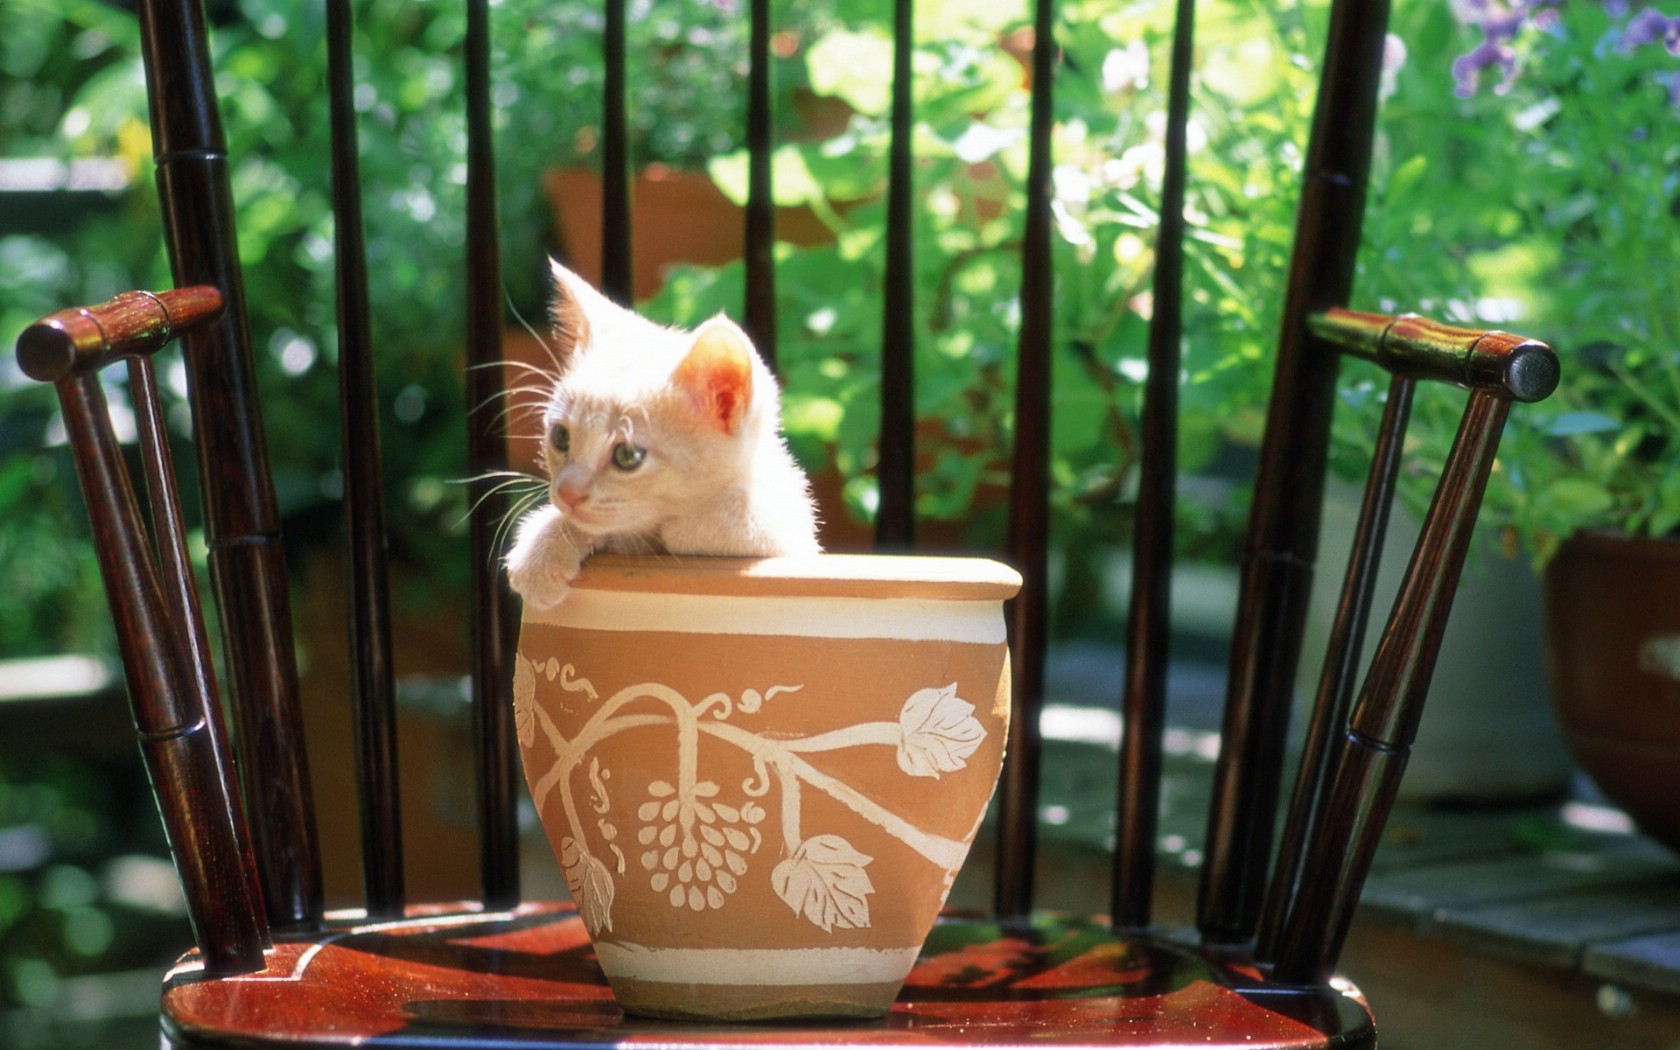 壁纸1680x1050 花盆里的小猫咪图片壁纸壁纸 后院里的小猫咪壁纸 后院里的小猫咪图片 后院里的小猫咪素材 动物壁纸 动物图库 动物图片素材桌面壁纸